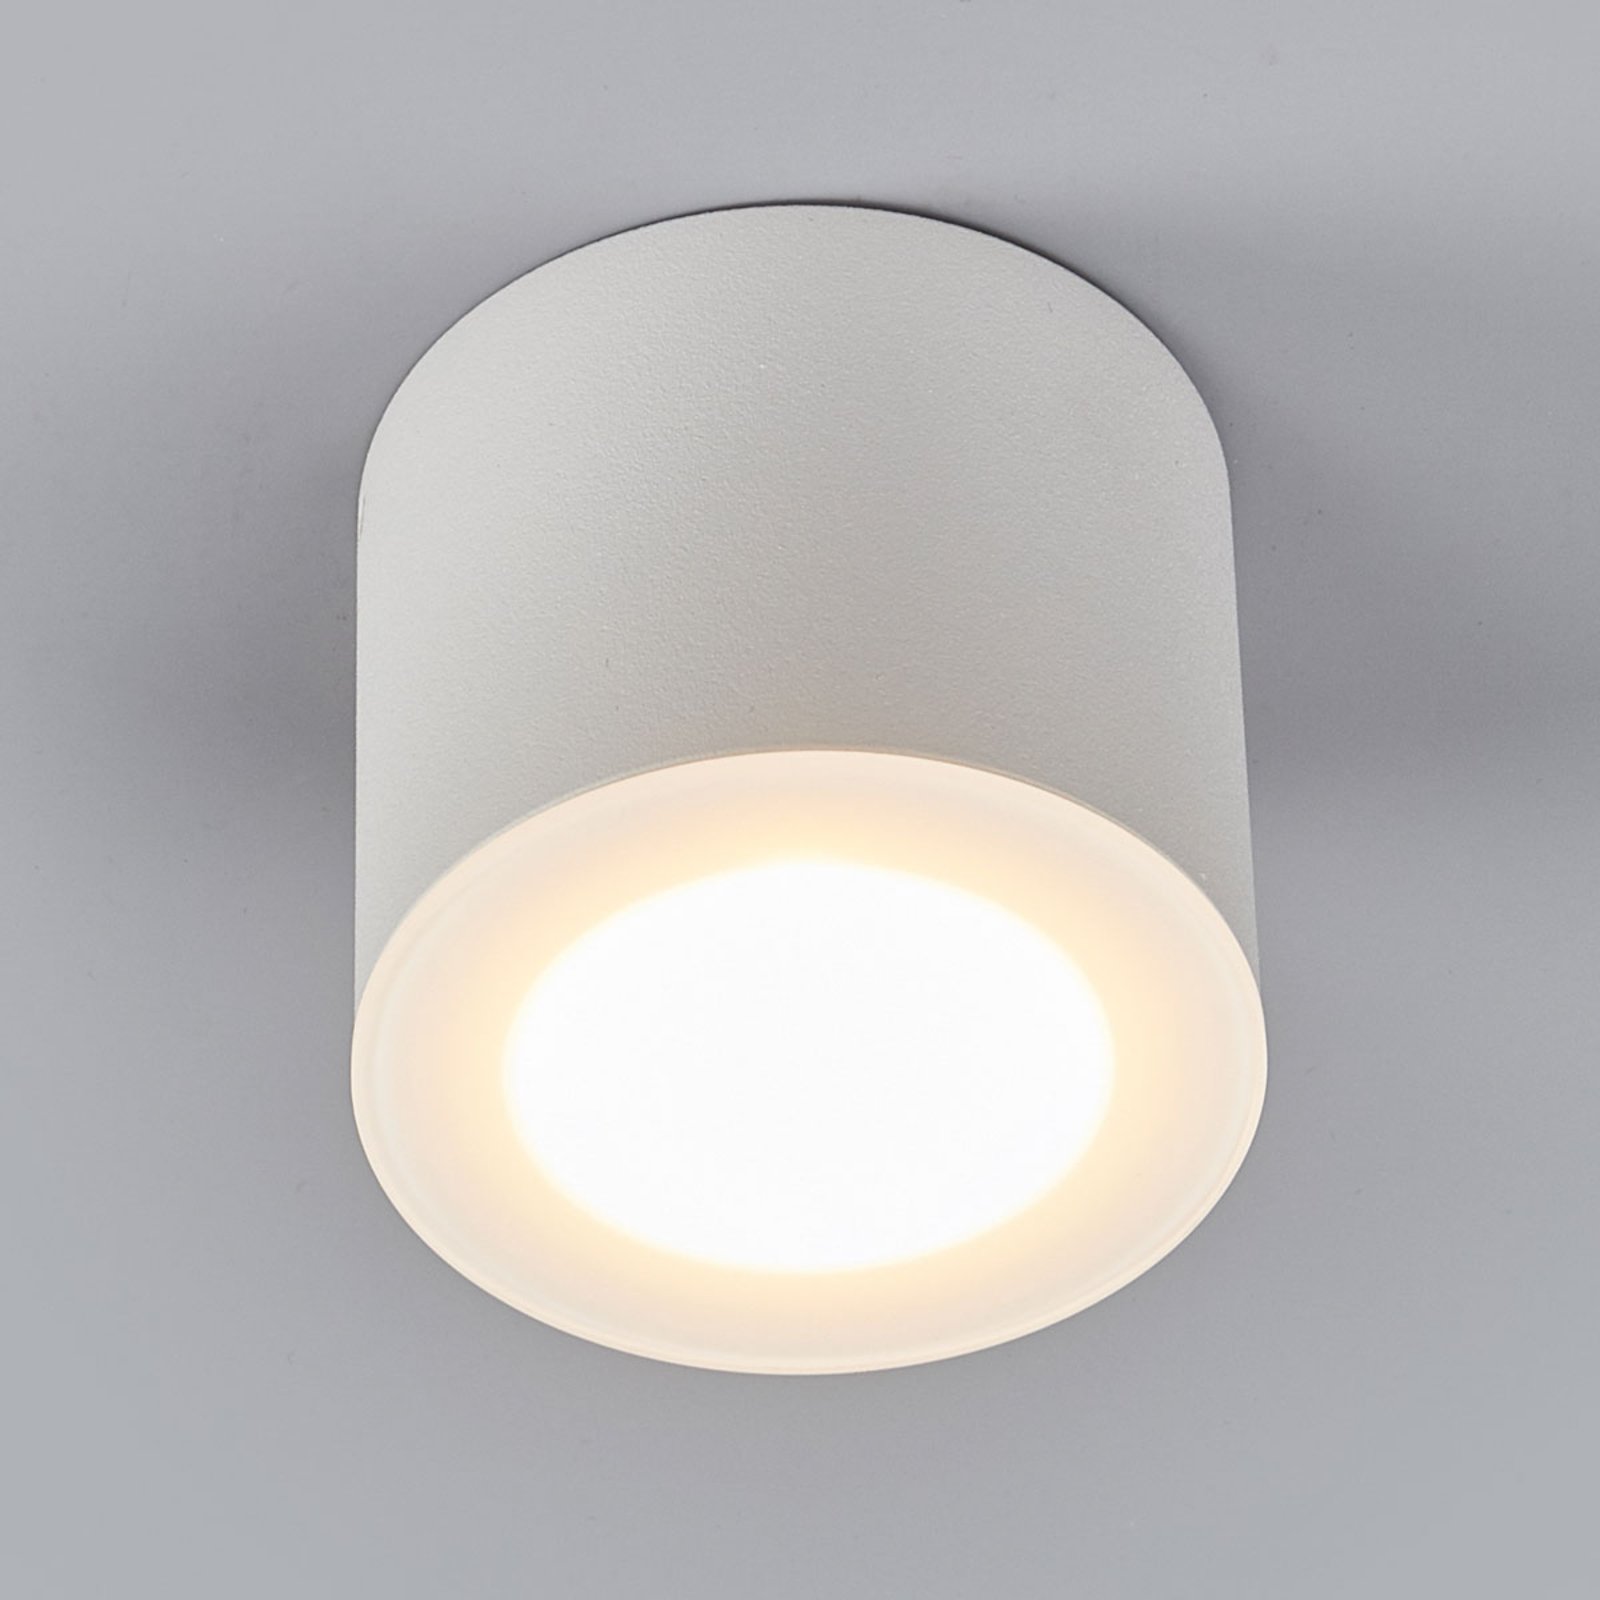 Helestra Oso stropní LED světlo, kruh, bílý mat